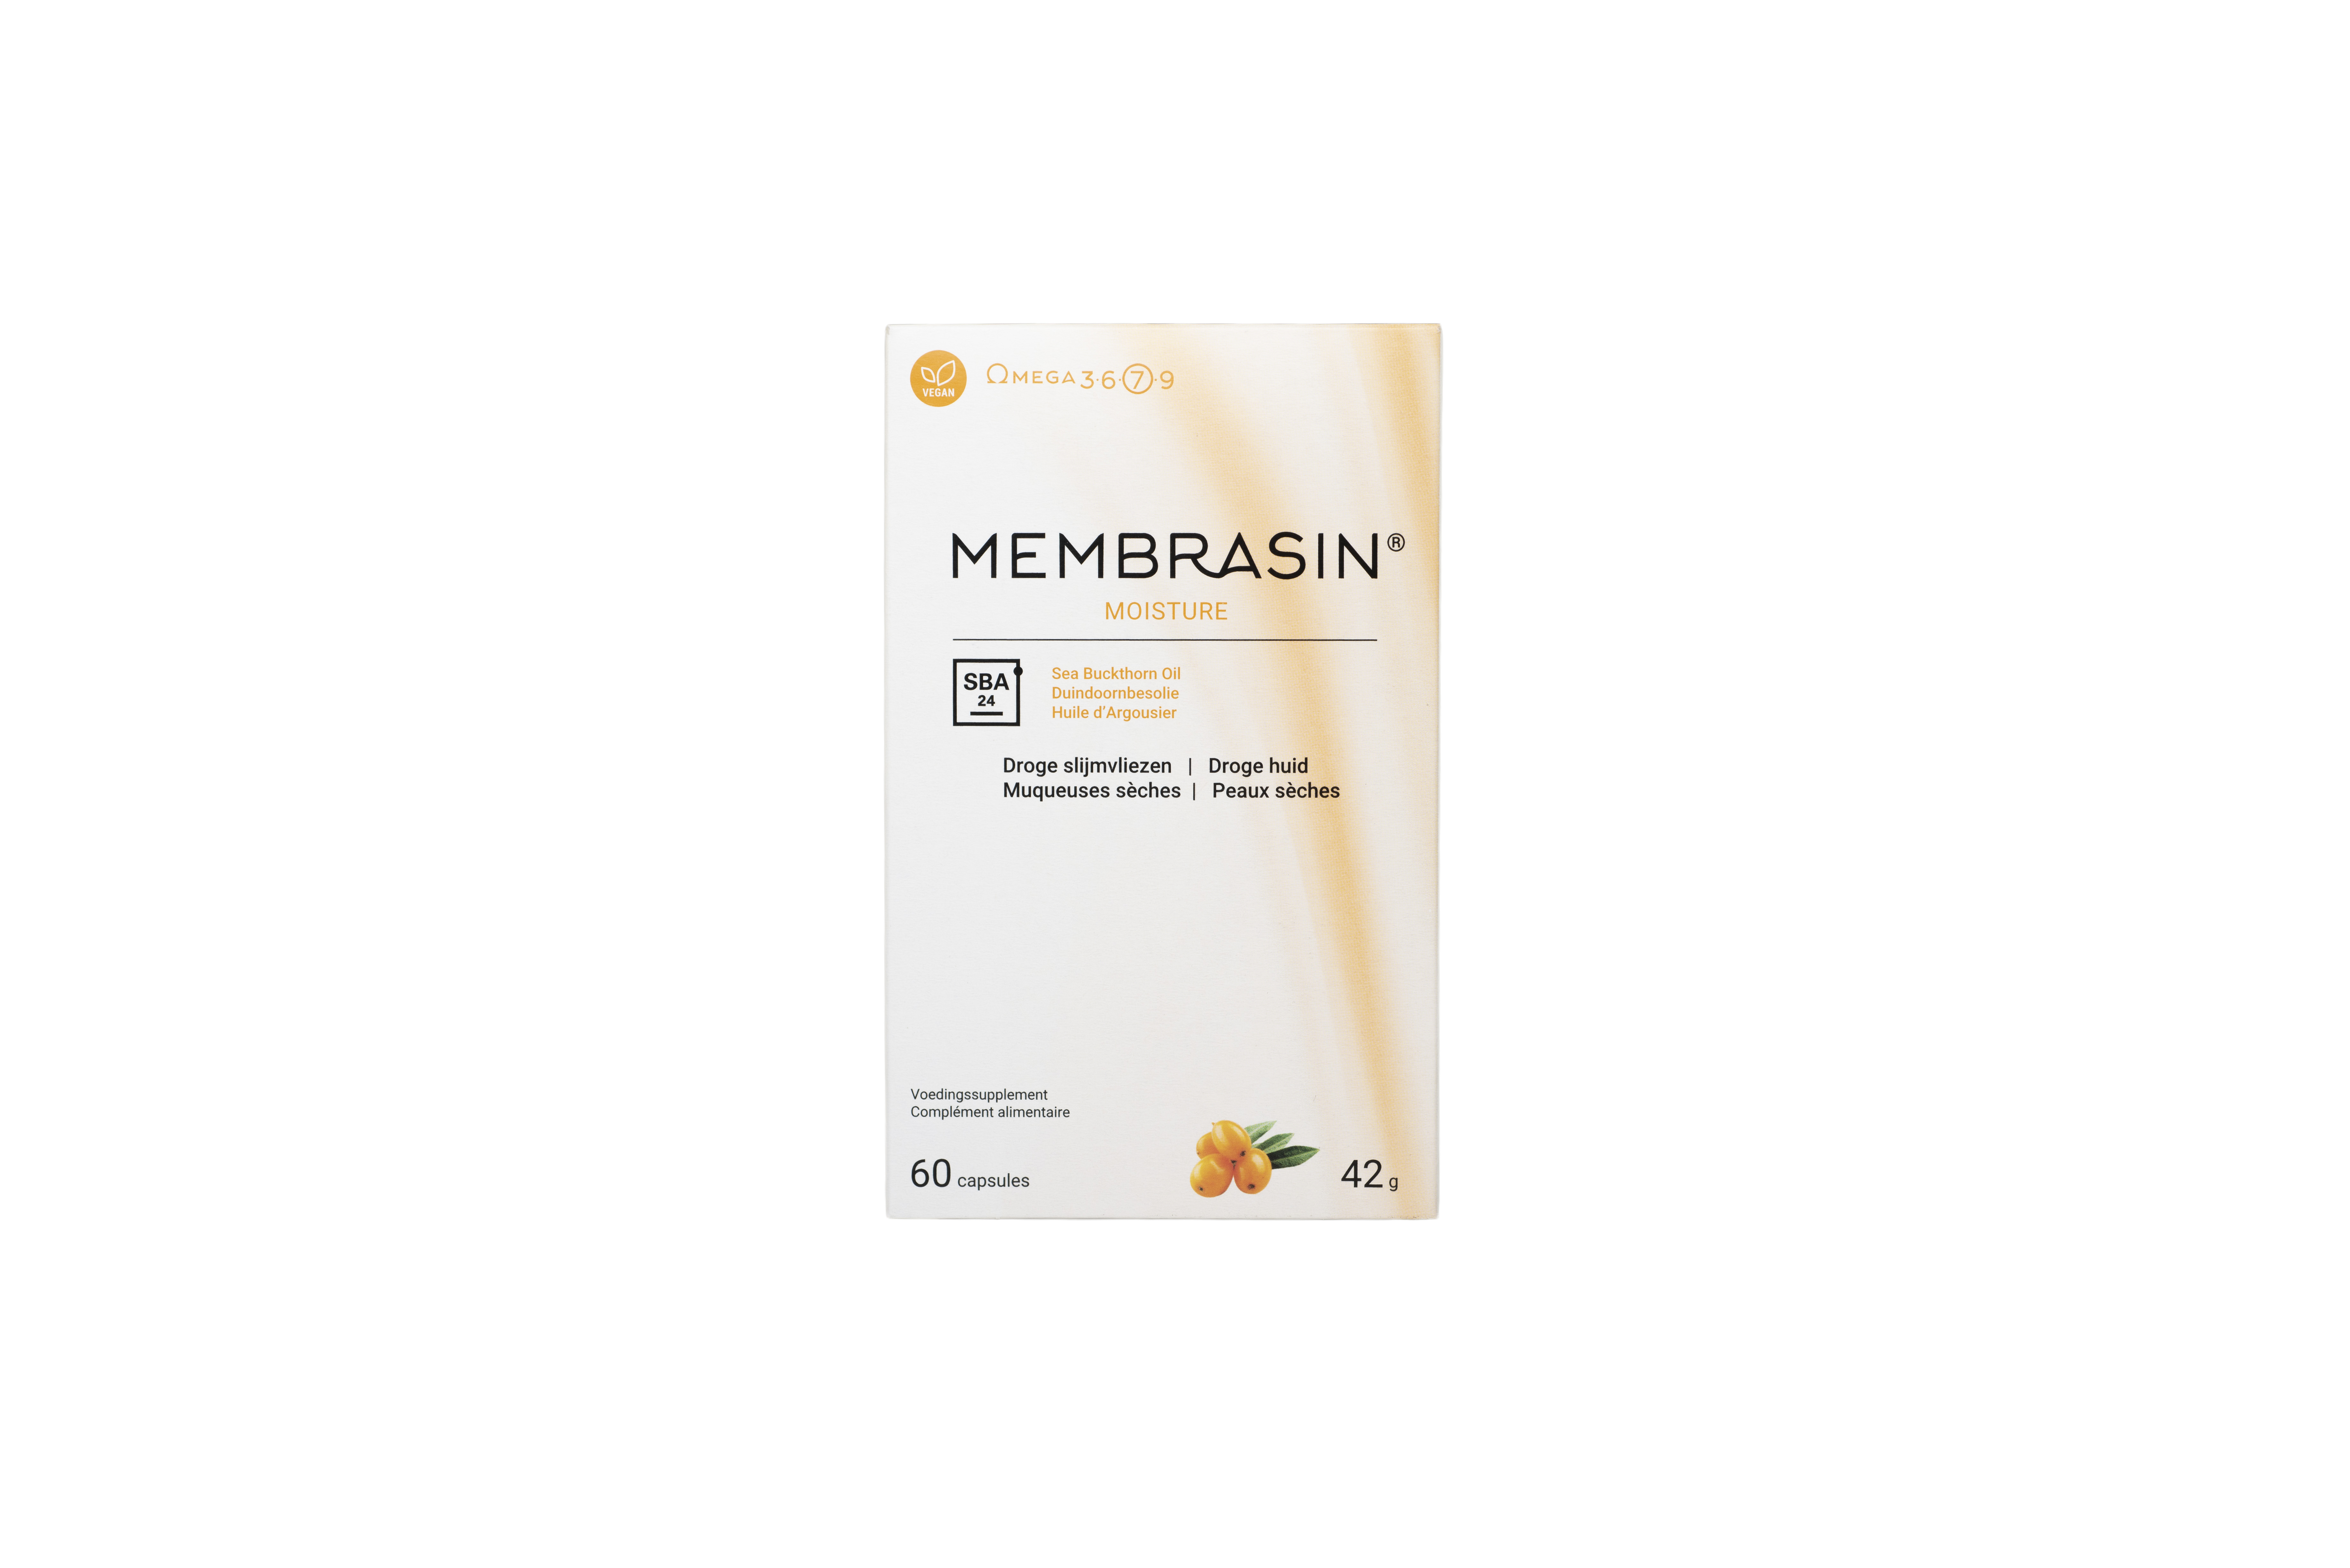 Membrasin (omega 7) 60 caps PL500/52